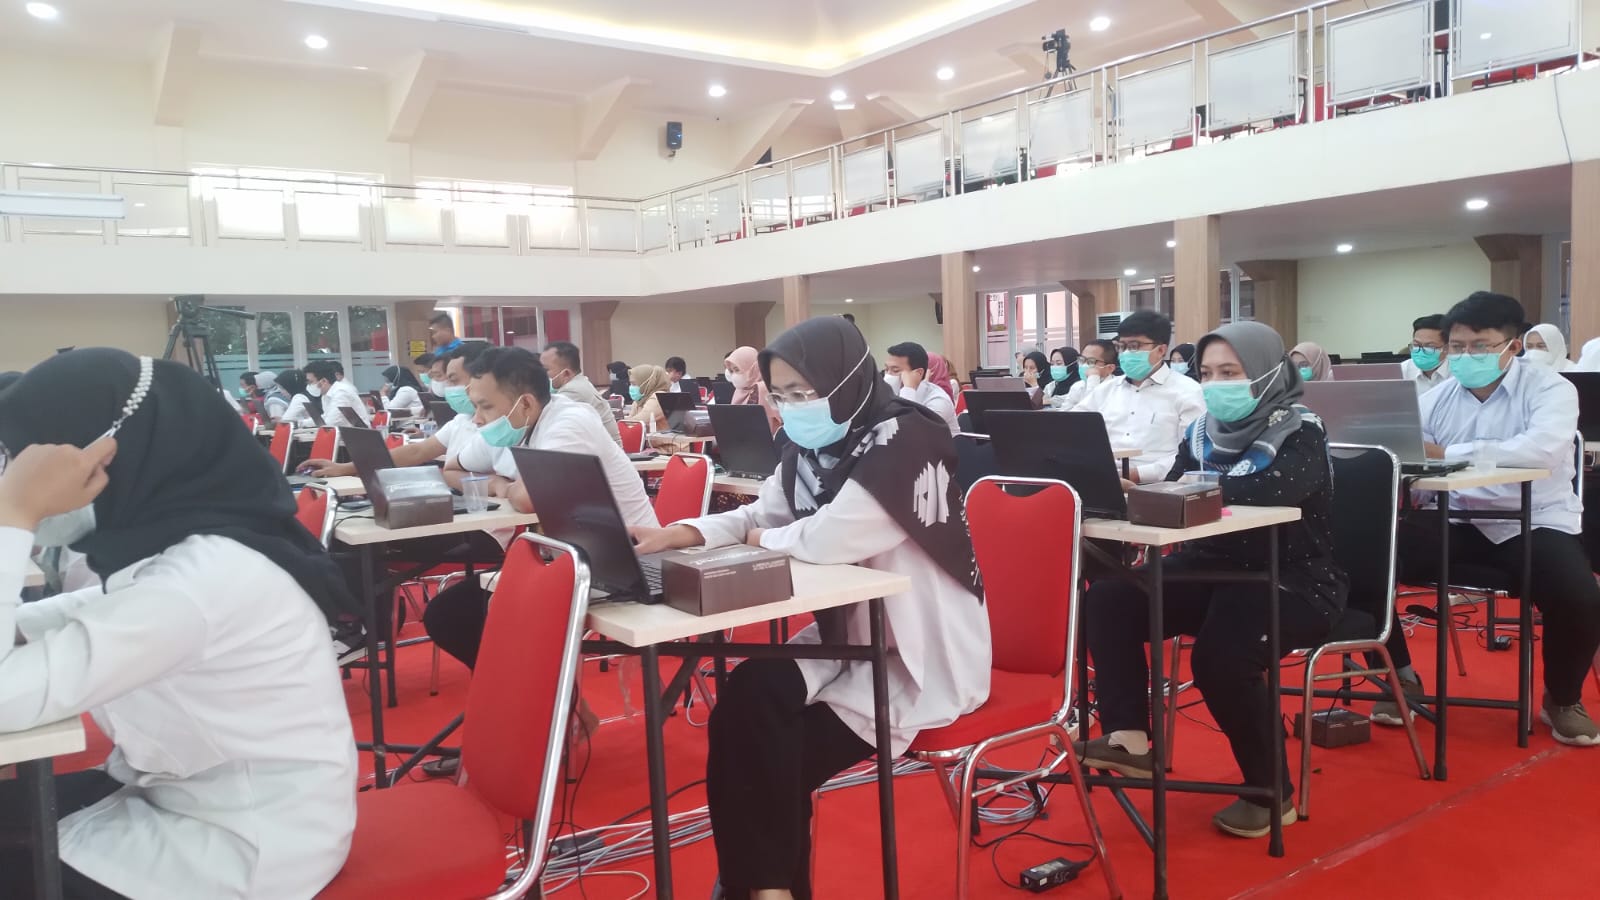 ANTUSIAS: Peserta try out calon ASN Jabar berbasis online tampak antusia mengerjakan latihan soal-soal seleksi di SMKN 3 Bandung, Rabu 23 November 2022. (YANUAR/JABAR EKSPRES)